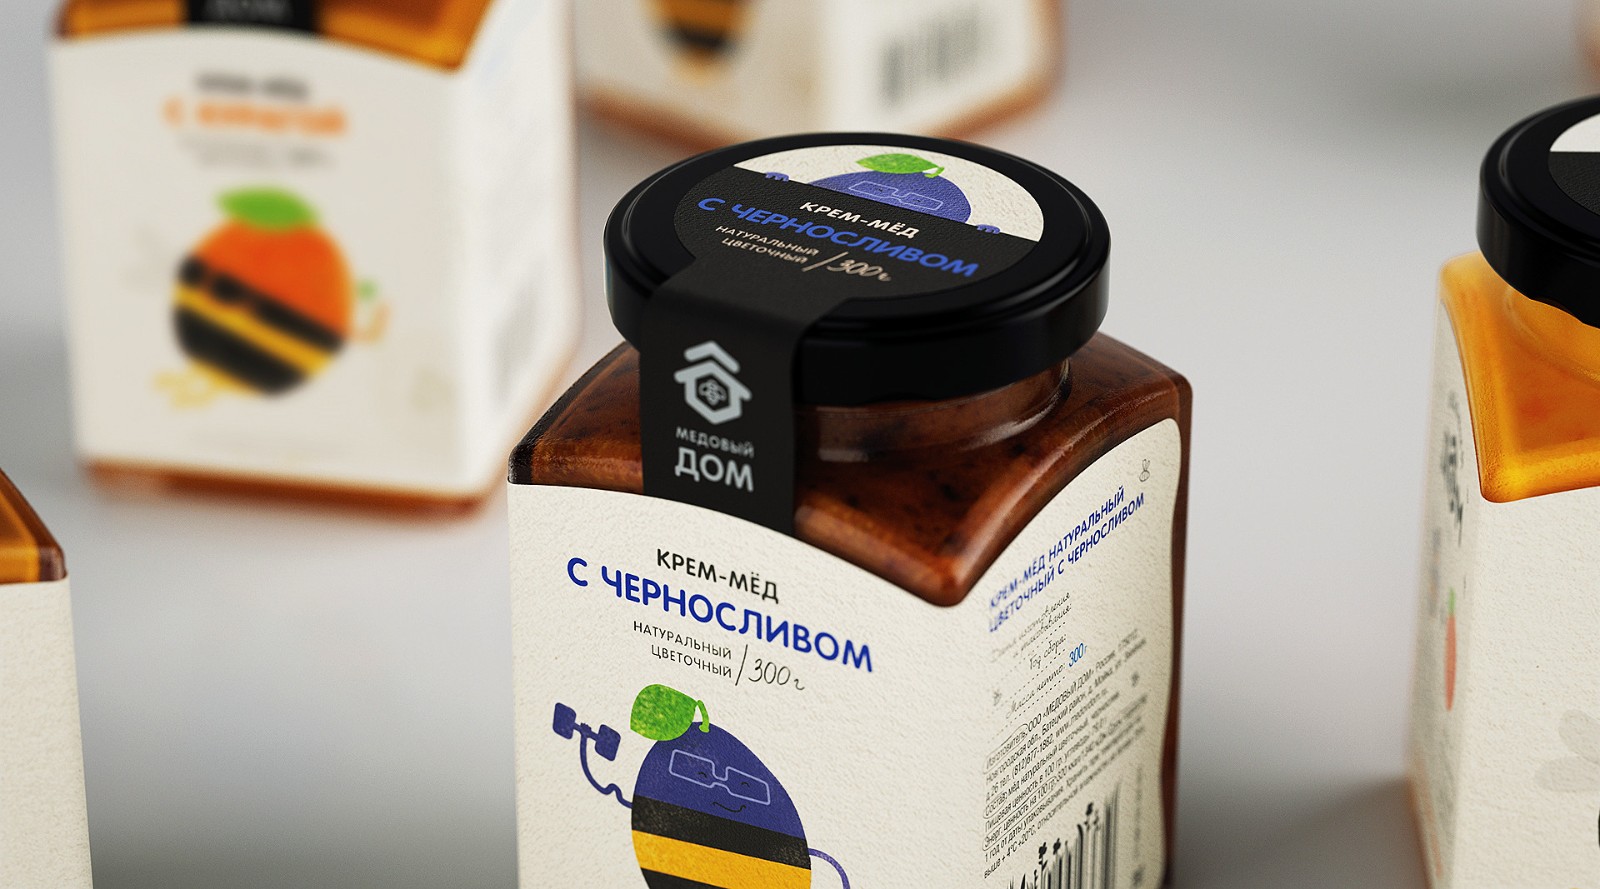 俄罗斯蜂蜜包装设计作品赏析 